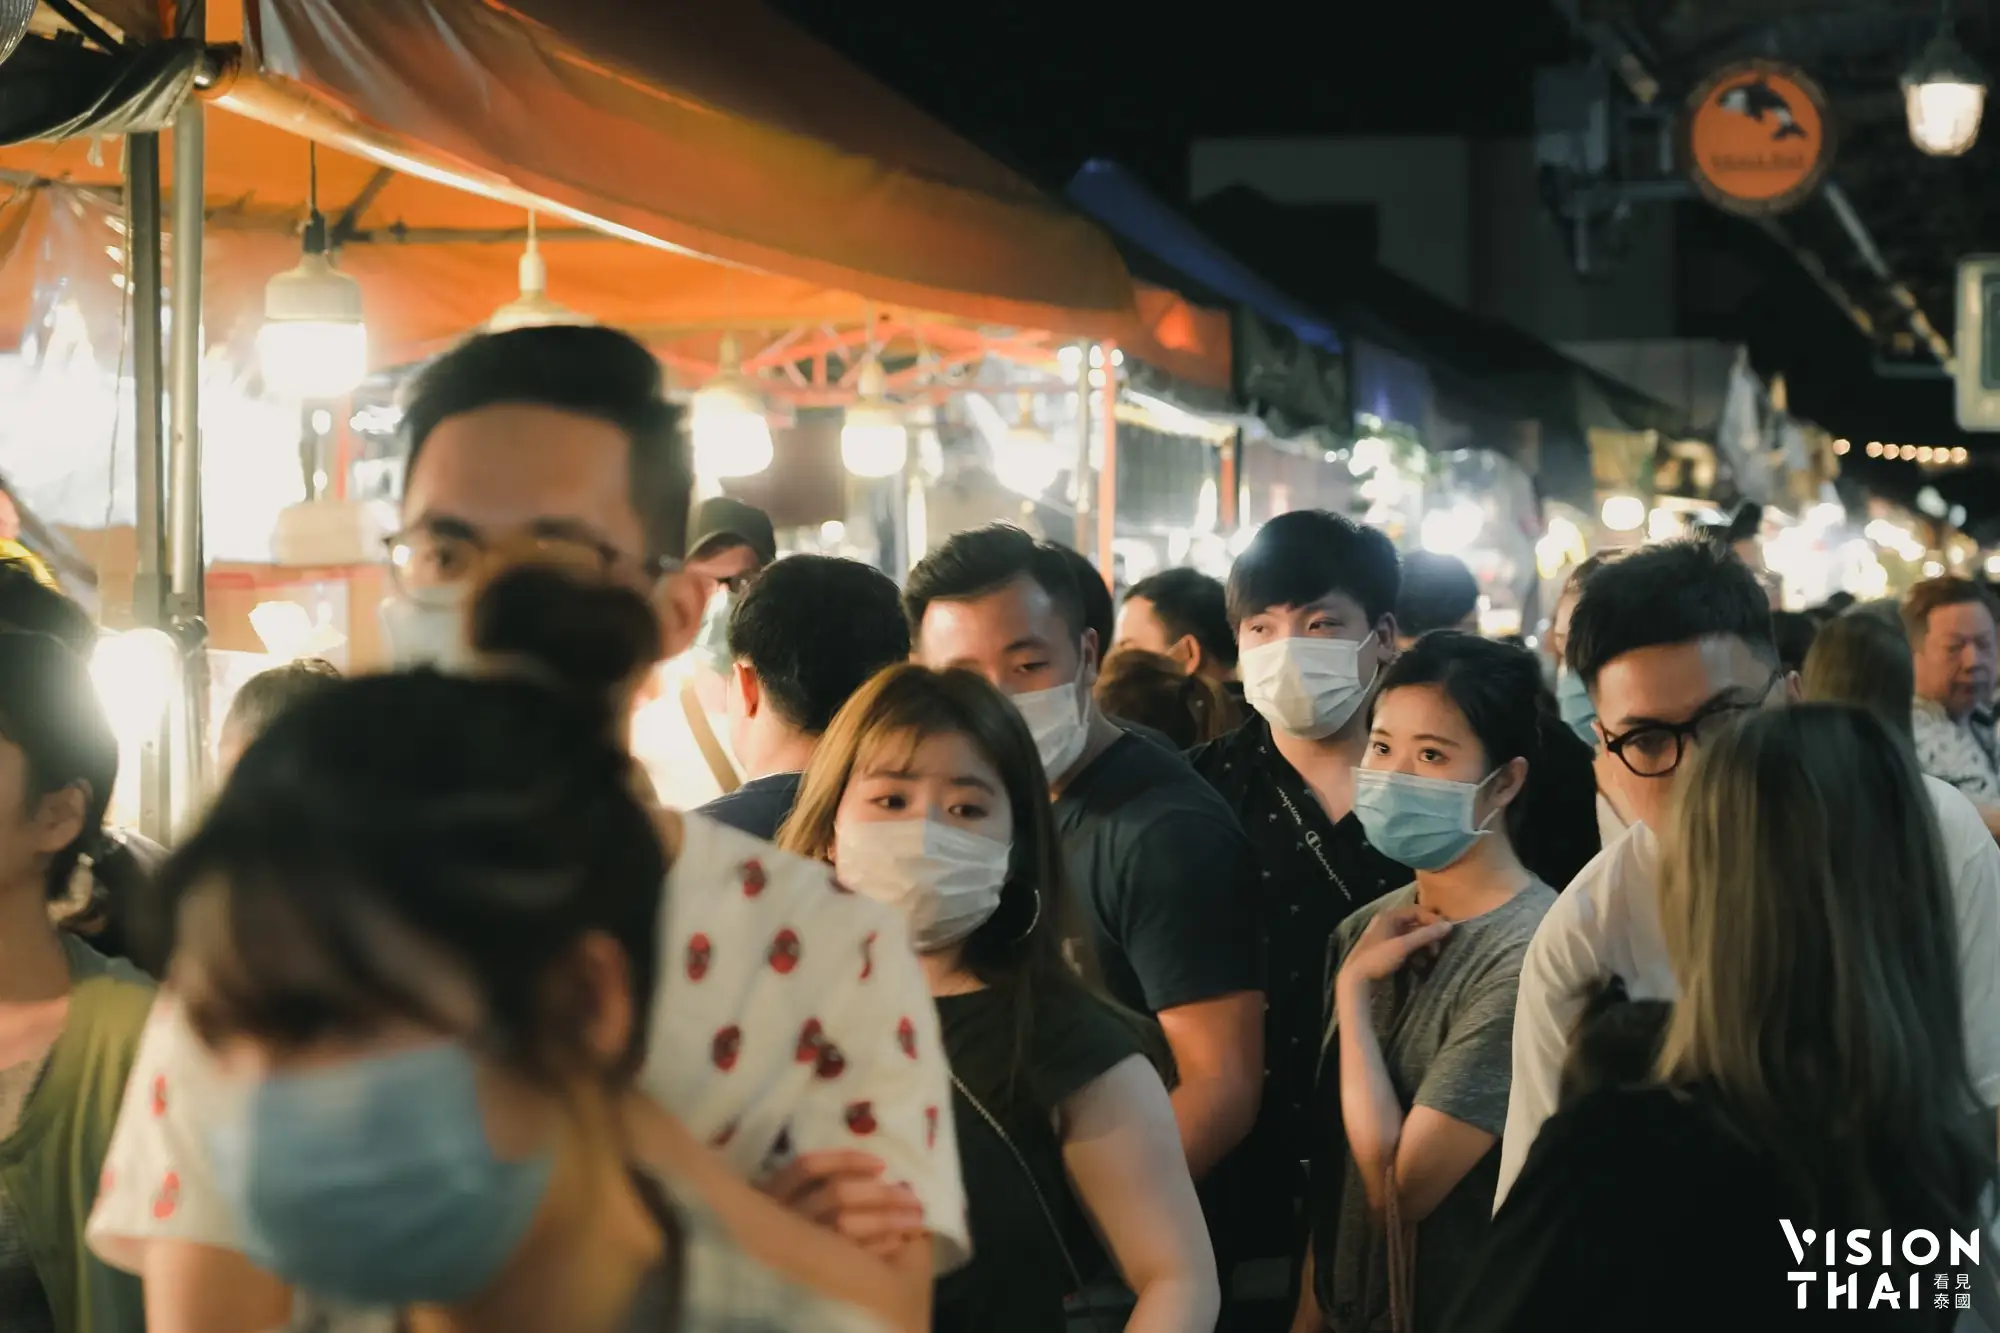 台灣將泰國列入旅遊疫情建議第三級警告（VISION THAI 看見泰國）